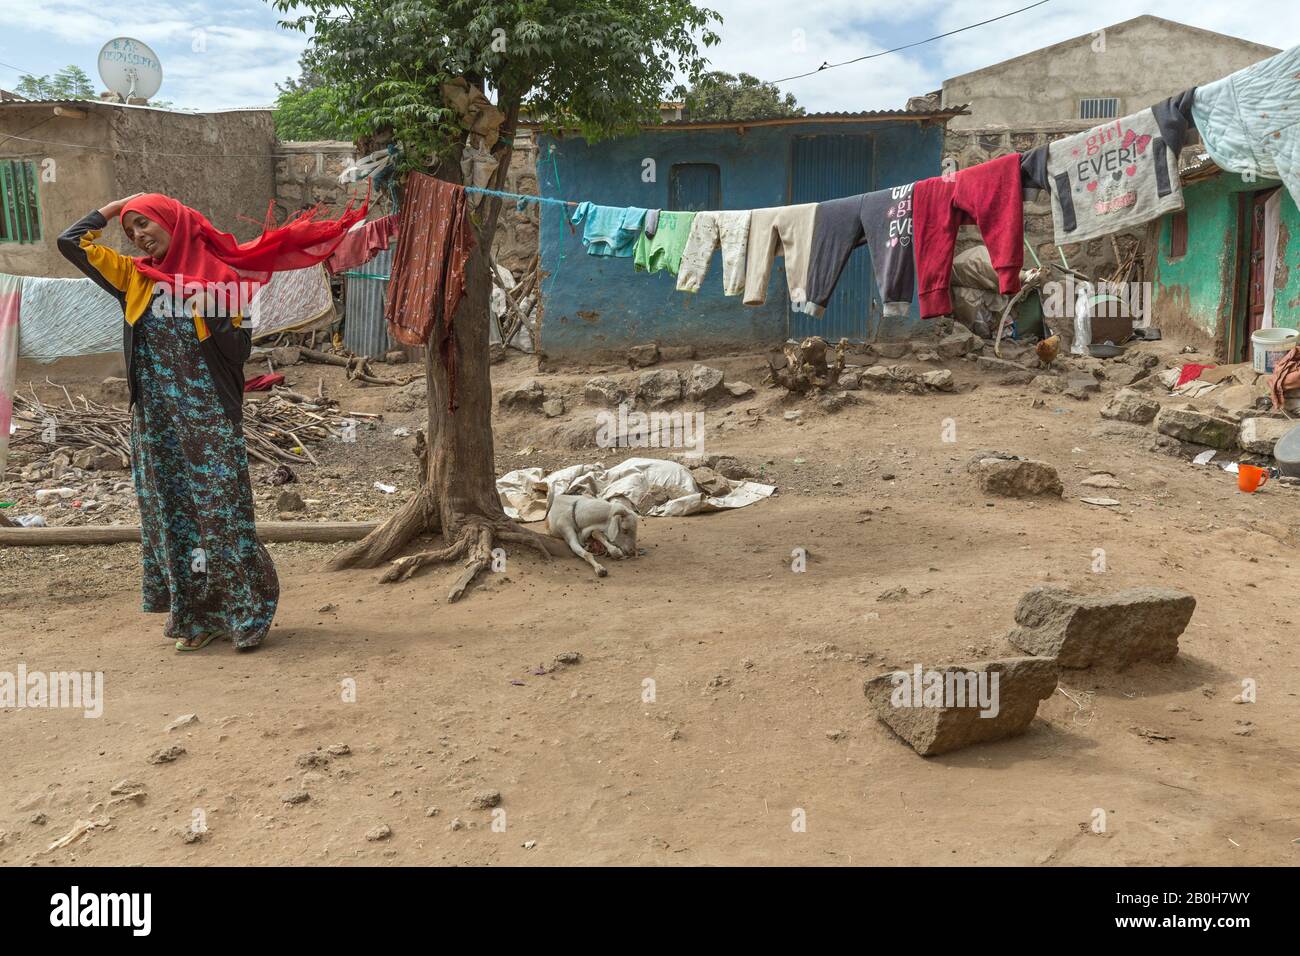 07.11.2019, Adama, Oromiyaa, Äthiopien - EINE verschleierte Frau steht im Innenhof eines einfachen, schlechten Gebäudekomplexes. Im Wind weht der Schleier. Frauen a Stockfoto